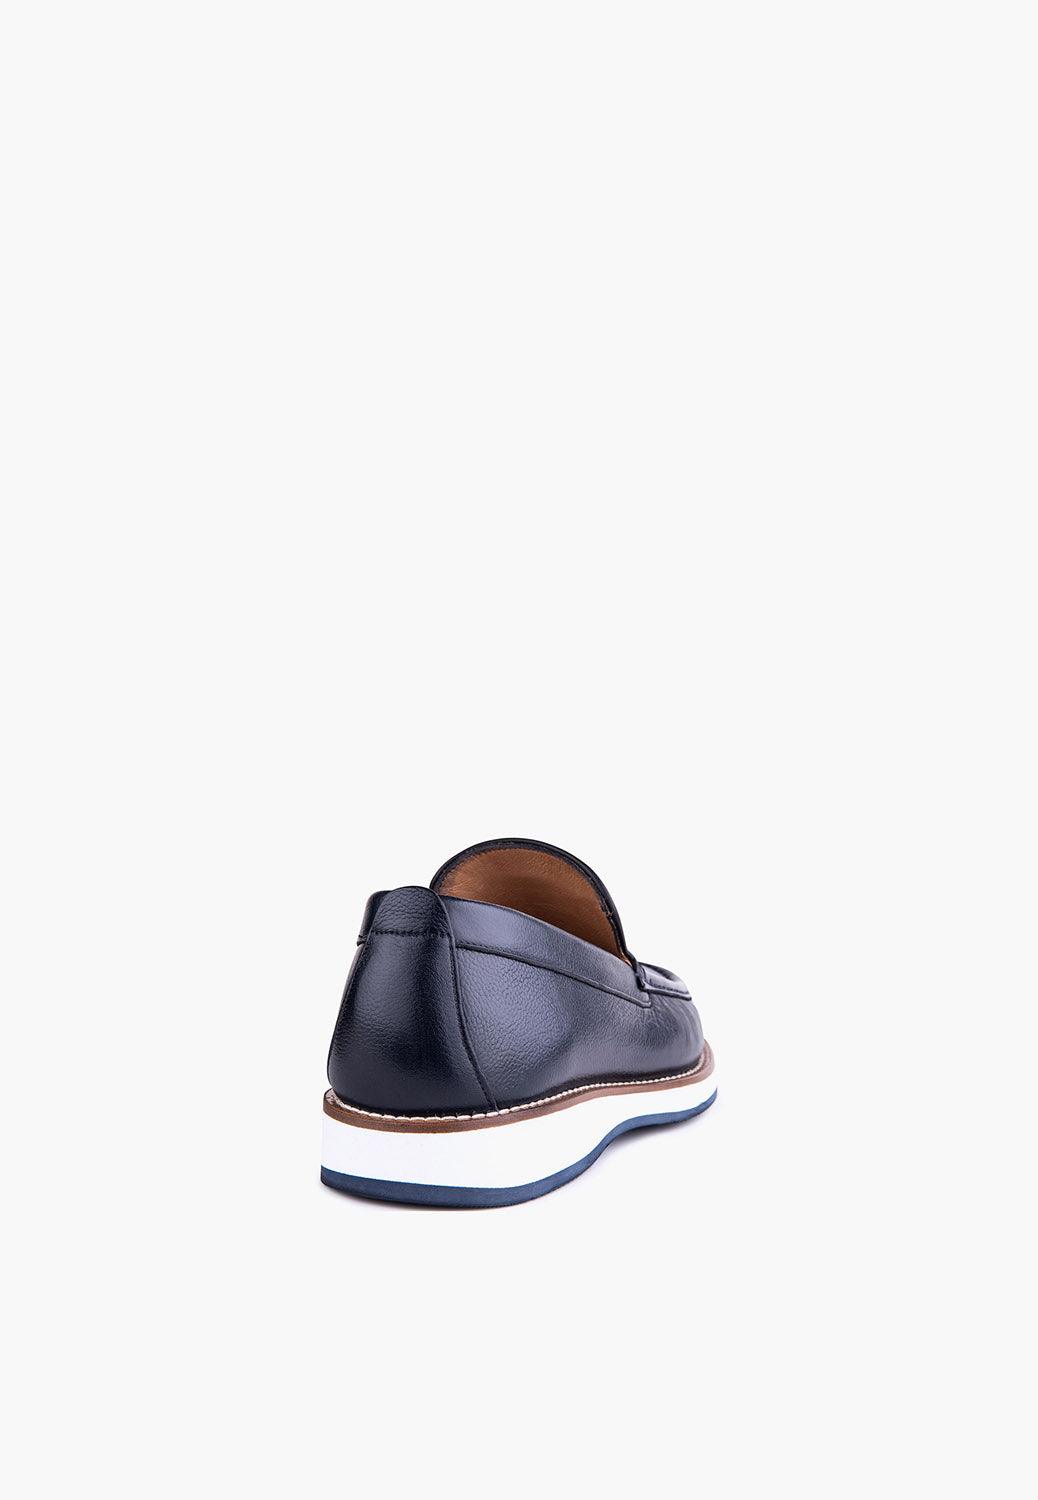 Voyage Loafer Navy - SEPOL Shoes